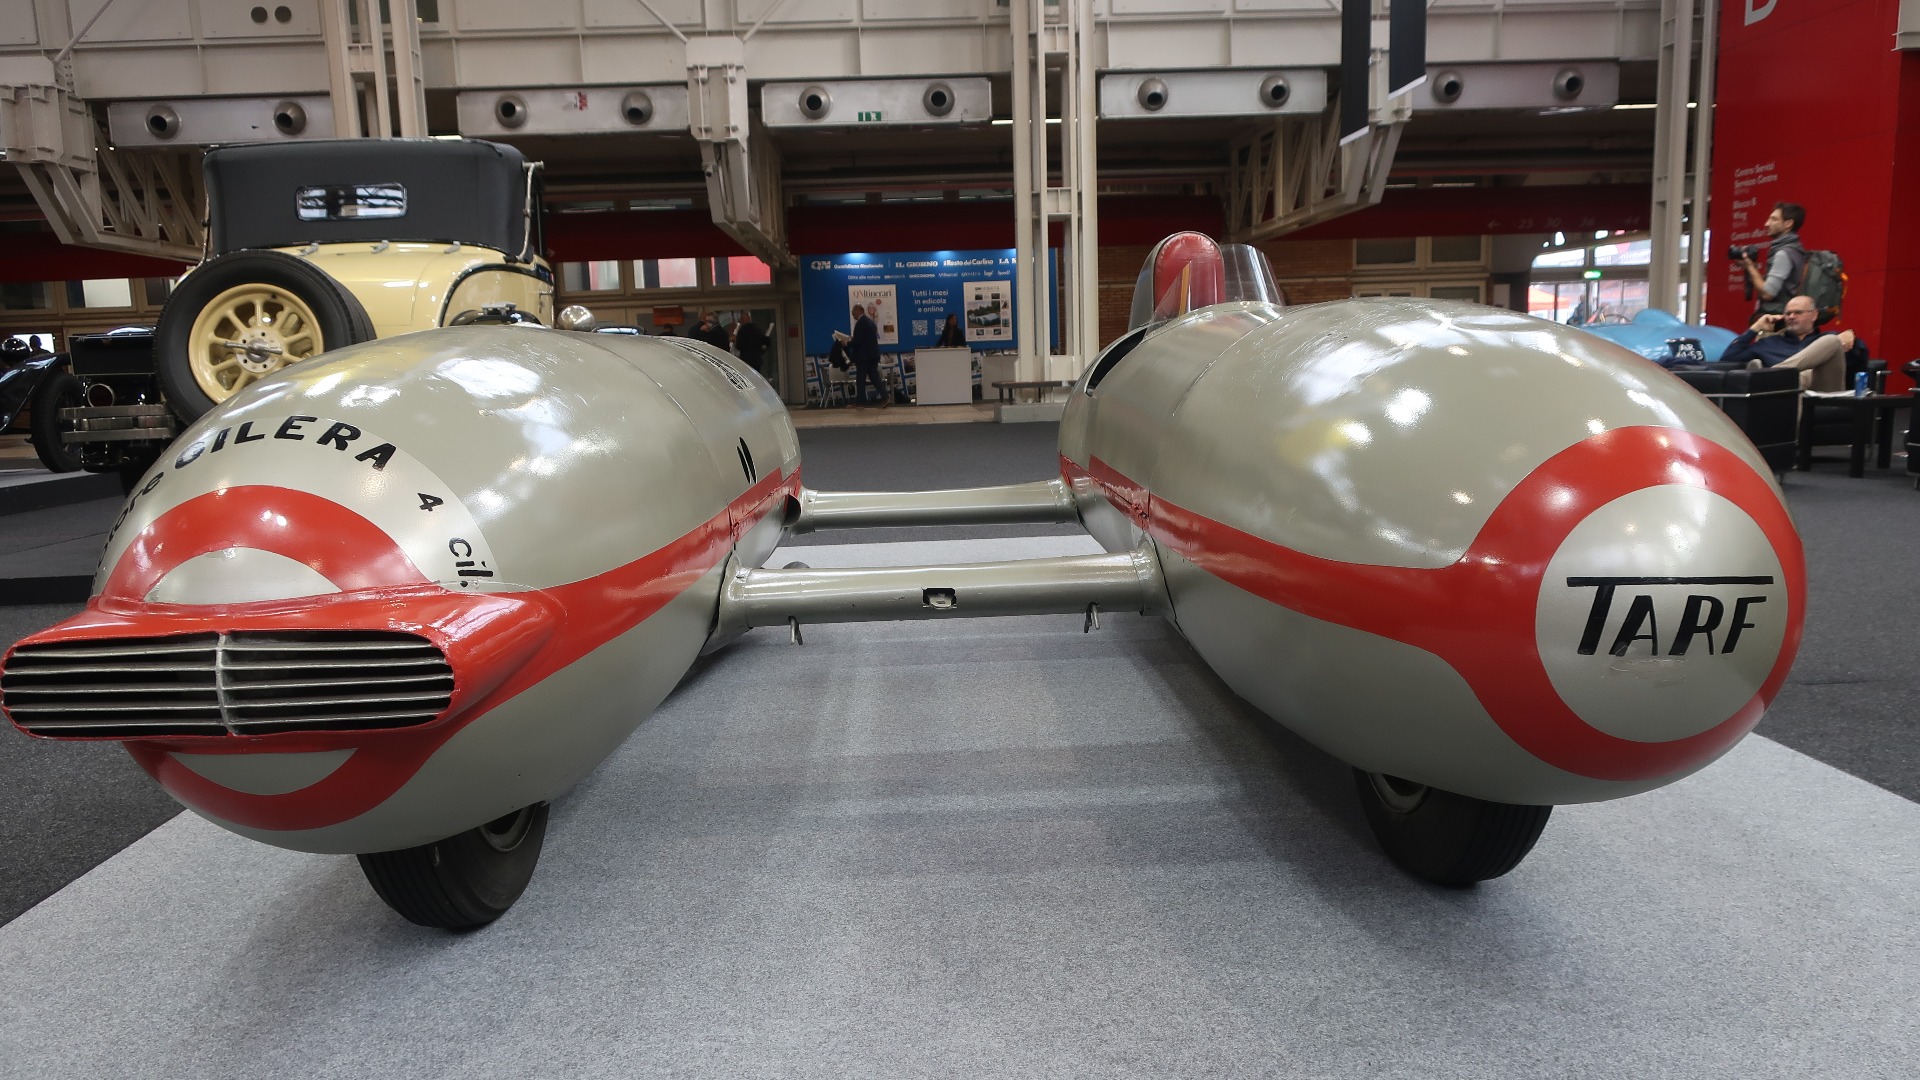 Flere museer hadde lånt ut godbiter. Som denne 1948 Tarf 1, som racerfører Piero Taruffi lagde for rekordforsøk. Den satte 22 internasjonale rekorder fra 1948 til 1957. 